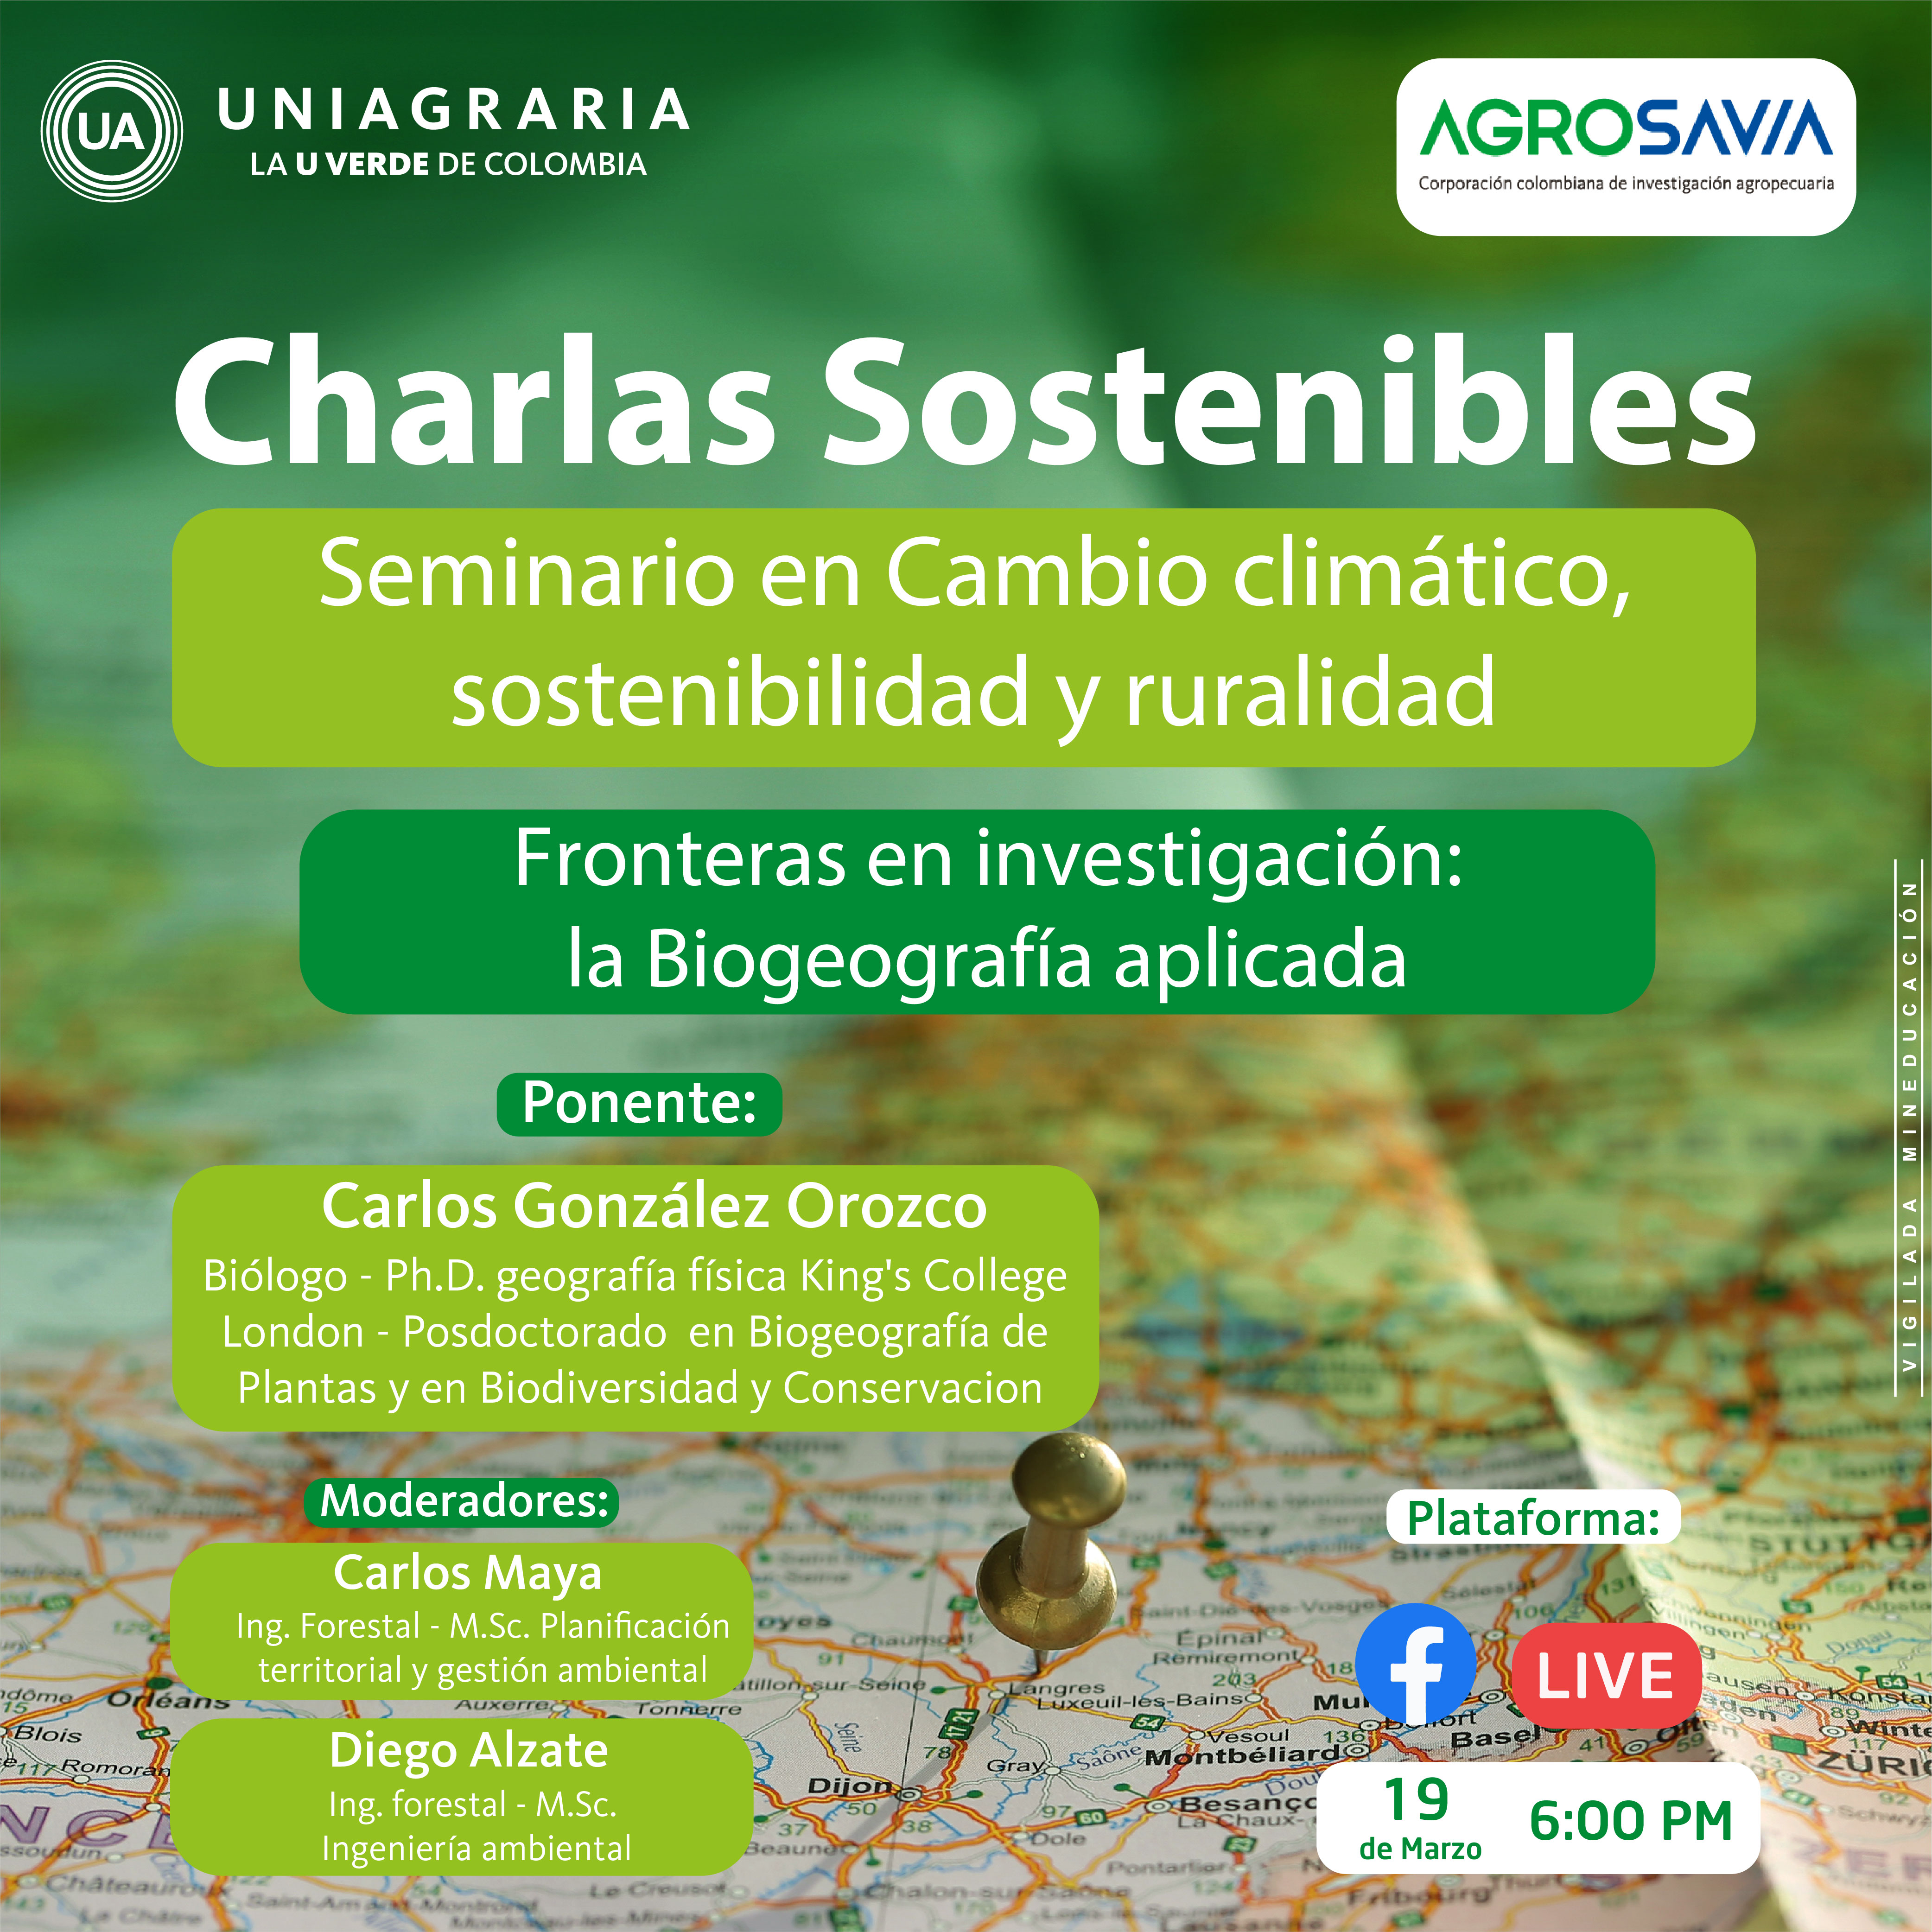 Charlas Sostenibles: Fronteras en investigación – la Biogeografía aplicada